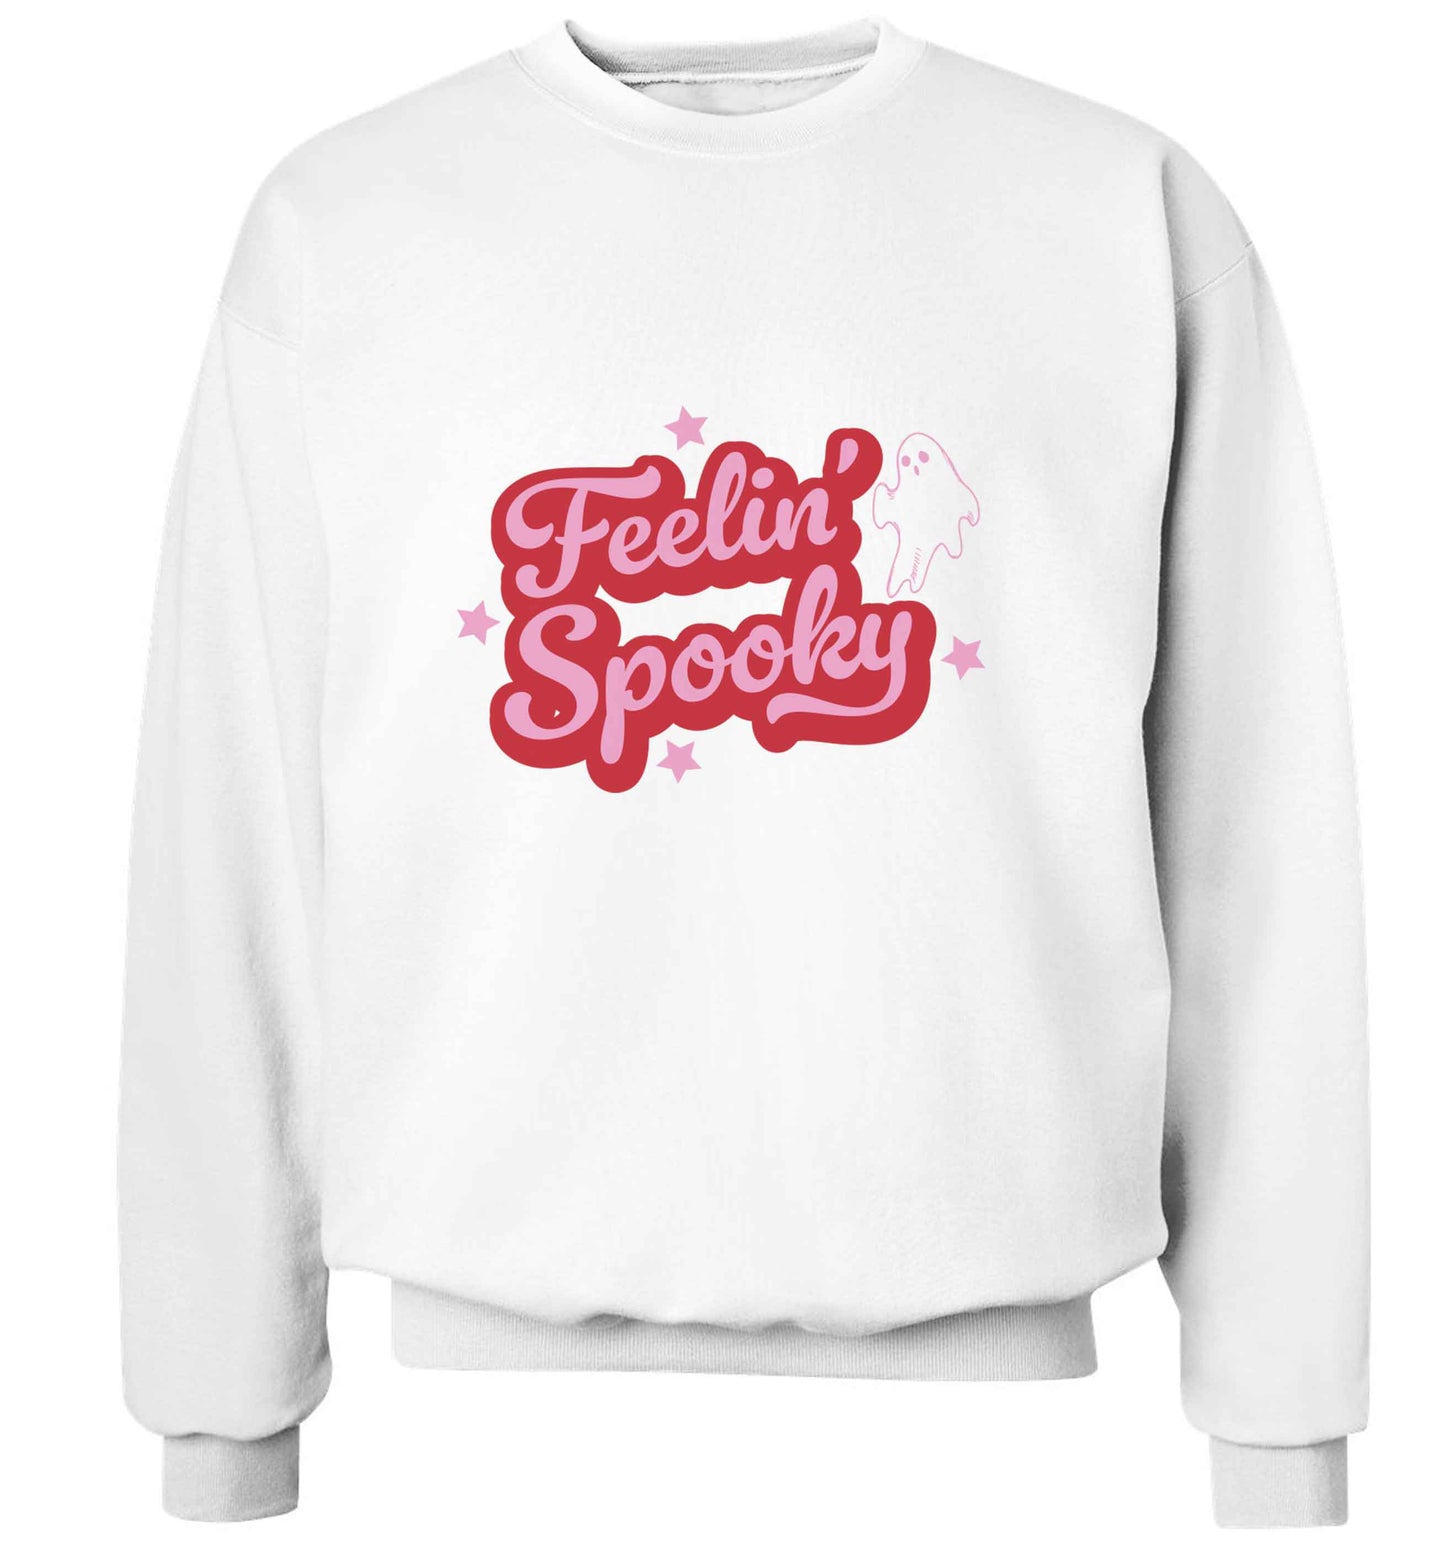 Feelin' Spooky Kit adult's unisex white sweater 2XL